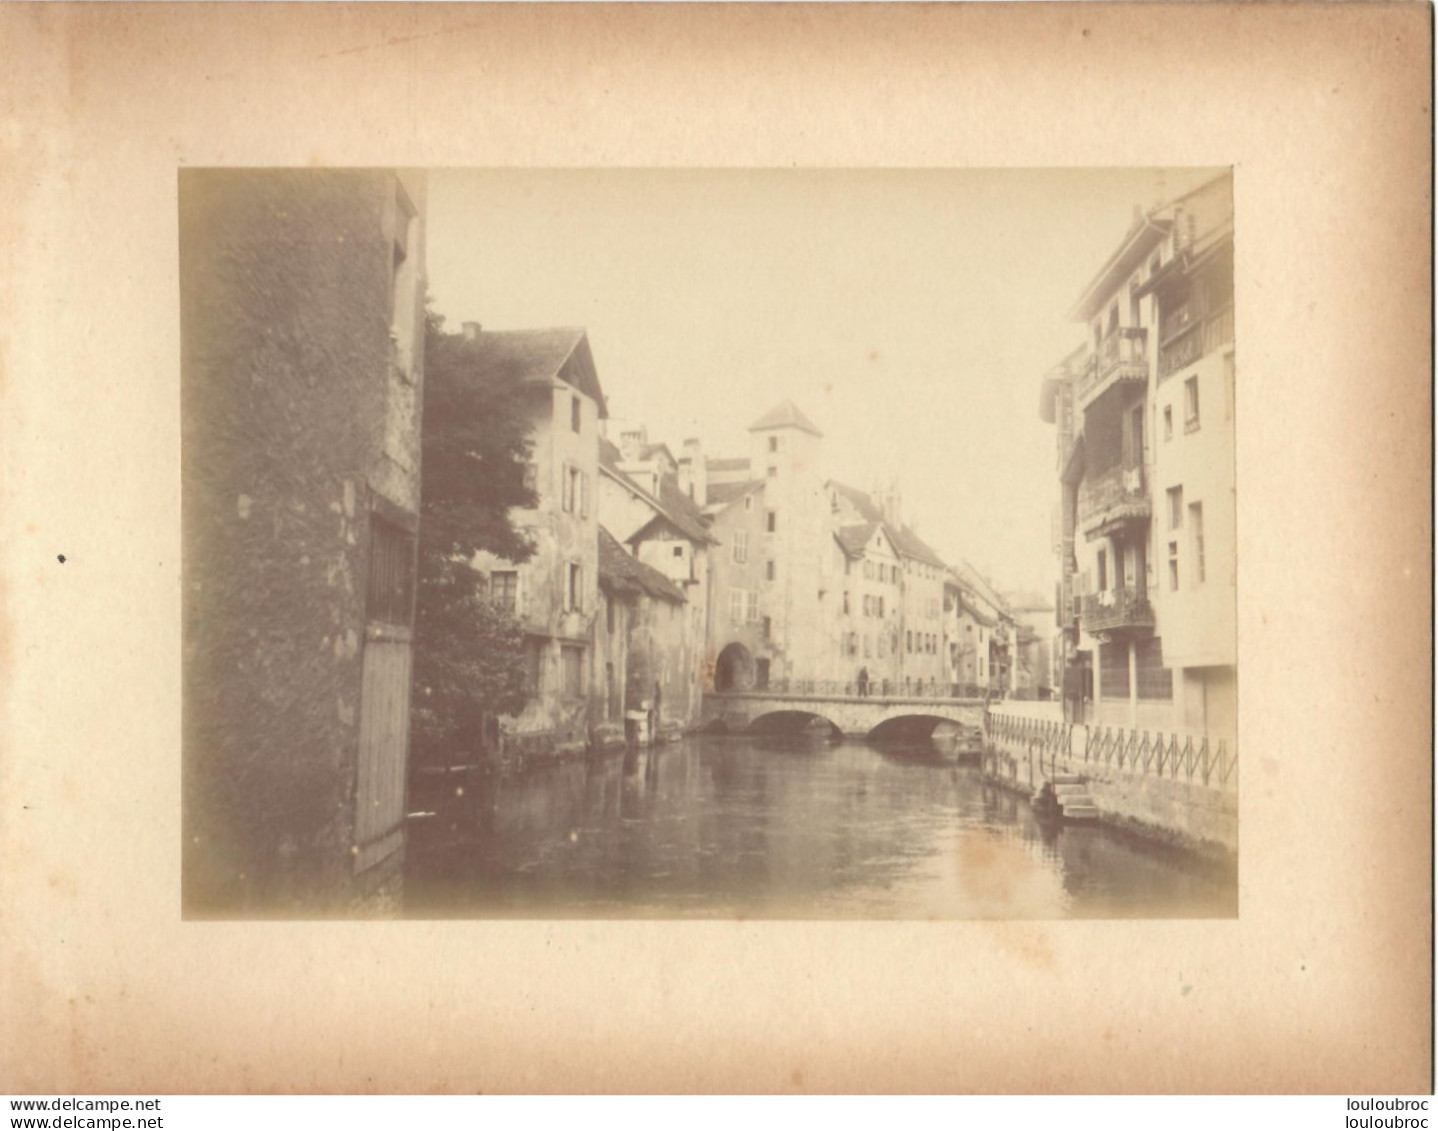 ANNECY CANAL DE THIOUX FIN 19em PHOTO ORIGINALE SUR CARTON 23x18CM FORMAT PHOTO 16X12CM - Old (before 1900)